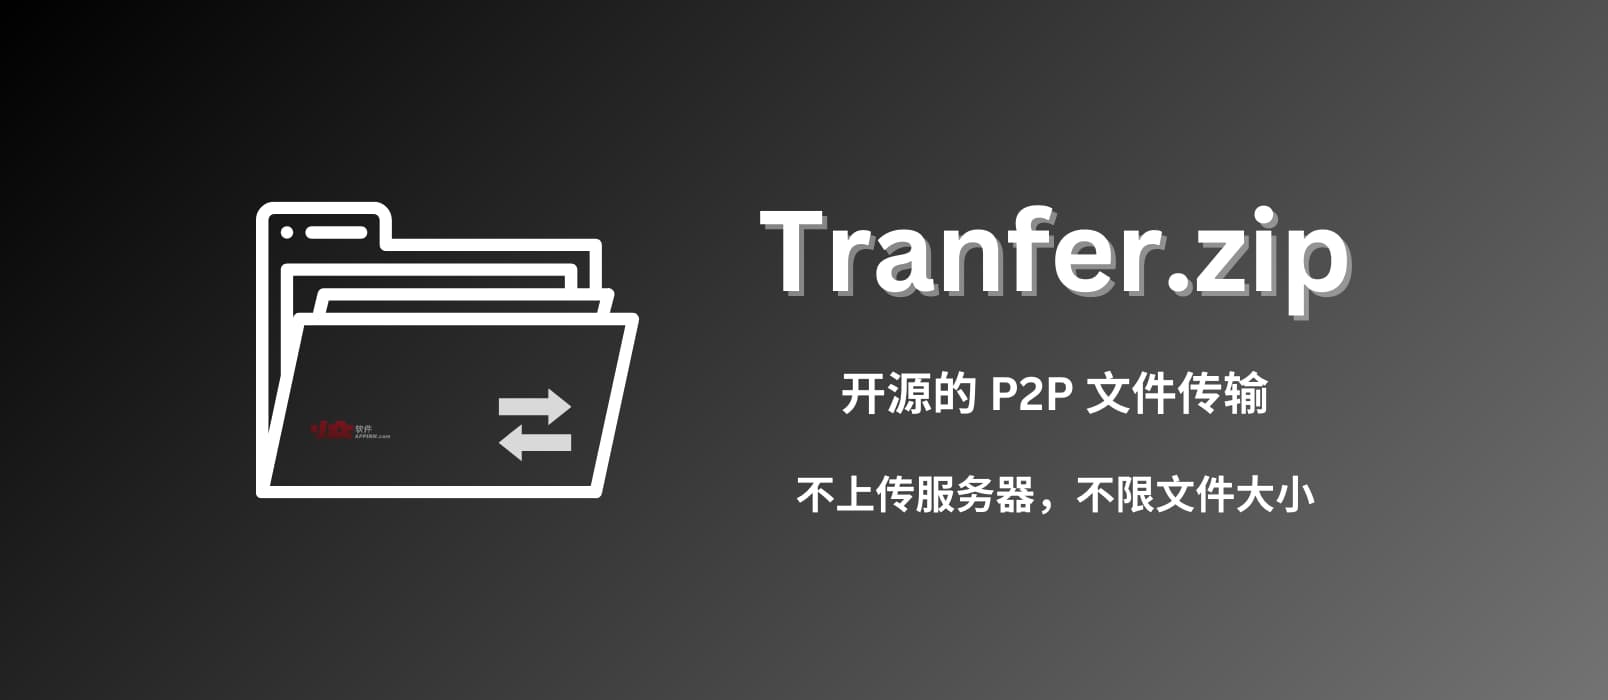 免费、开源、P2P、不限量，用 Transfer.zip 传输任意大小文件，不限速